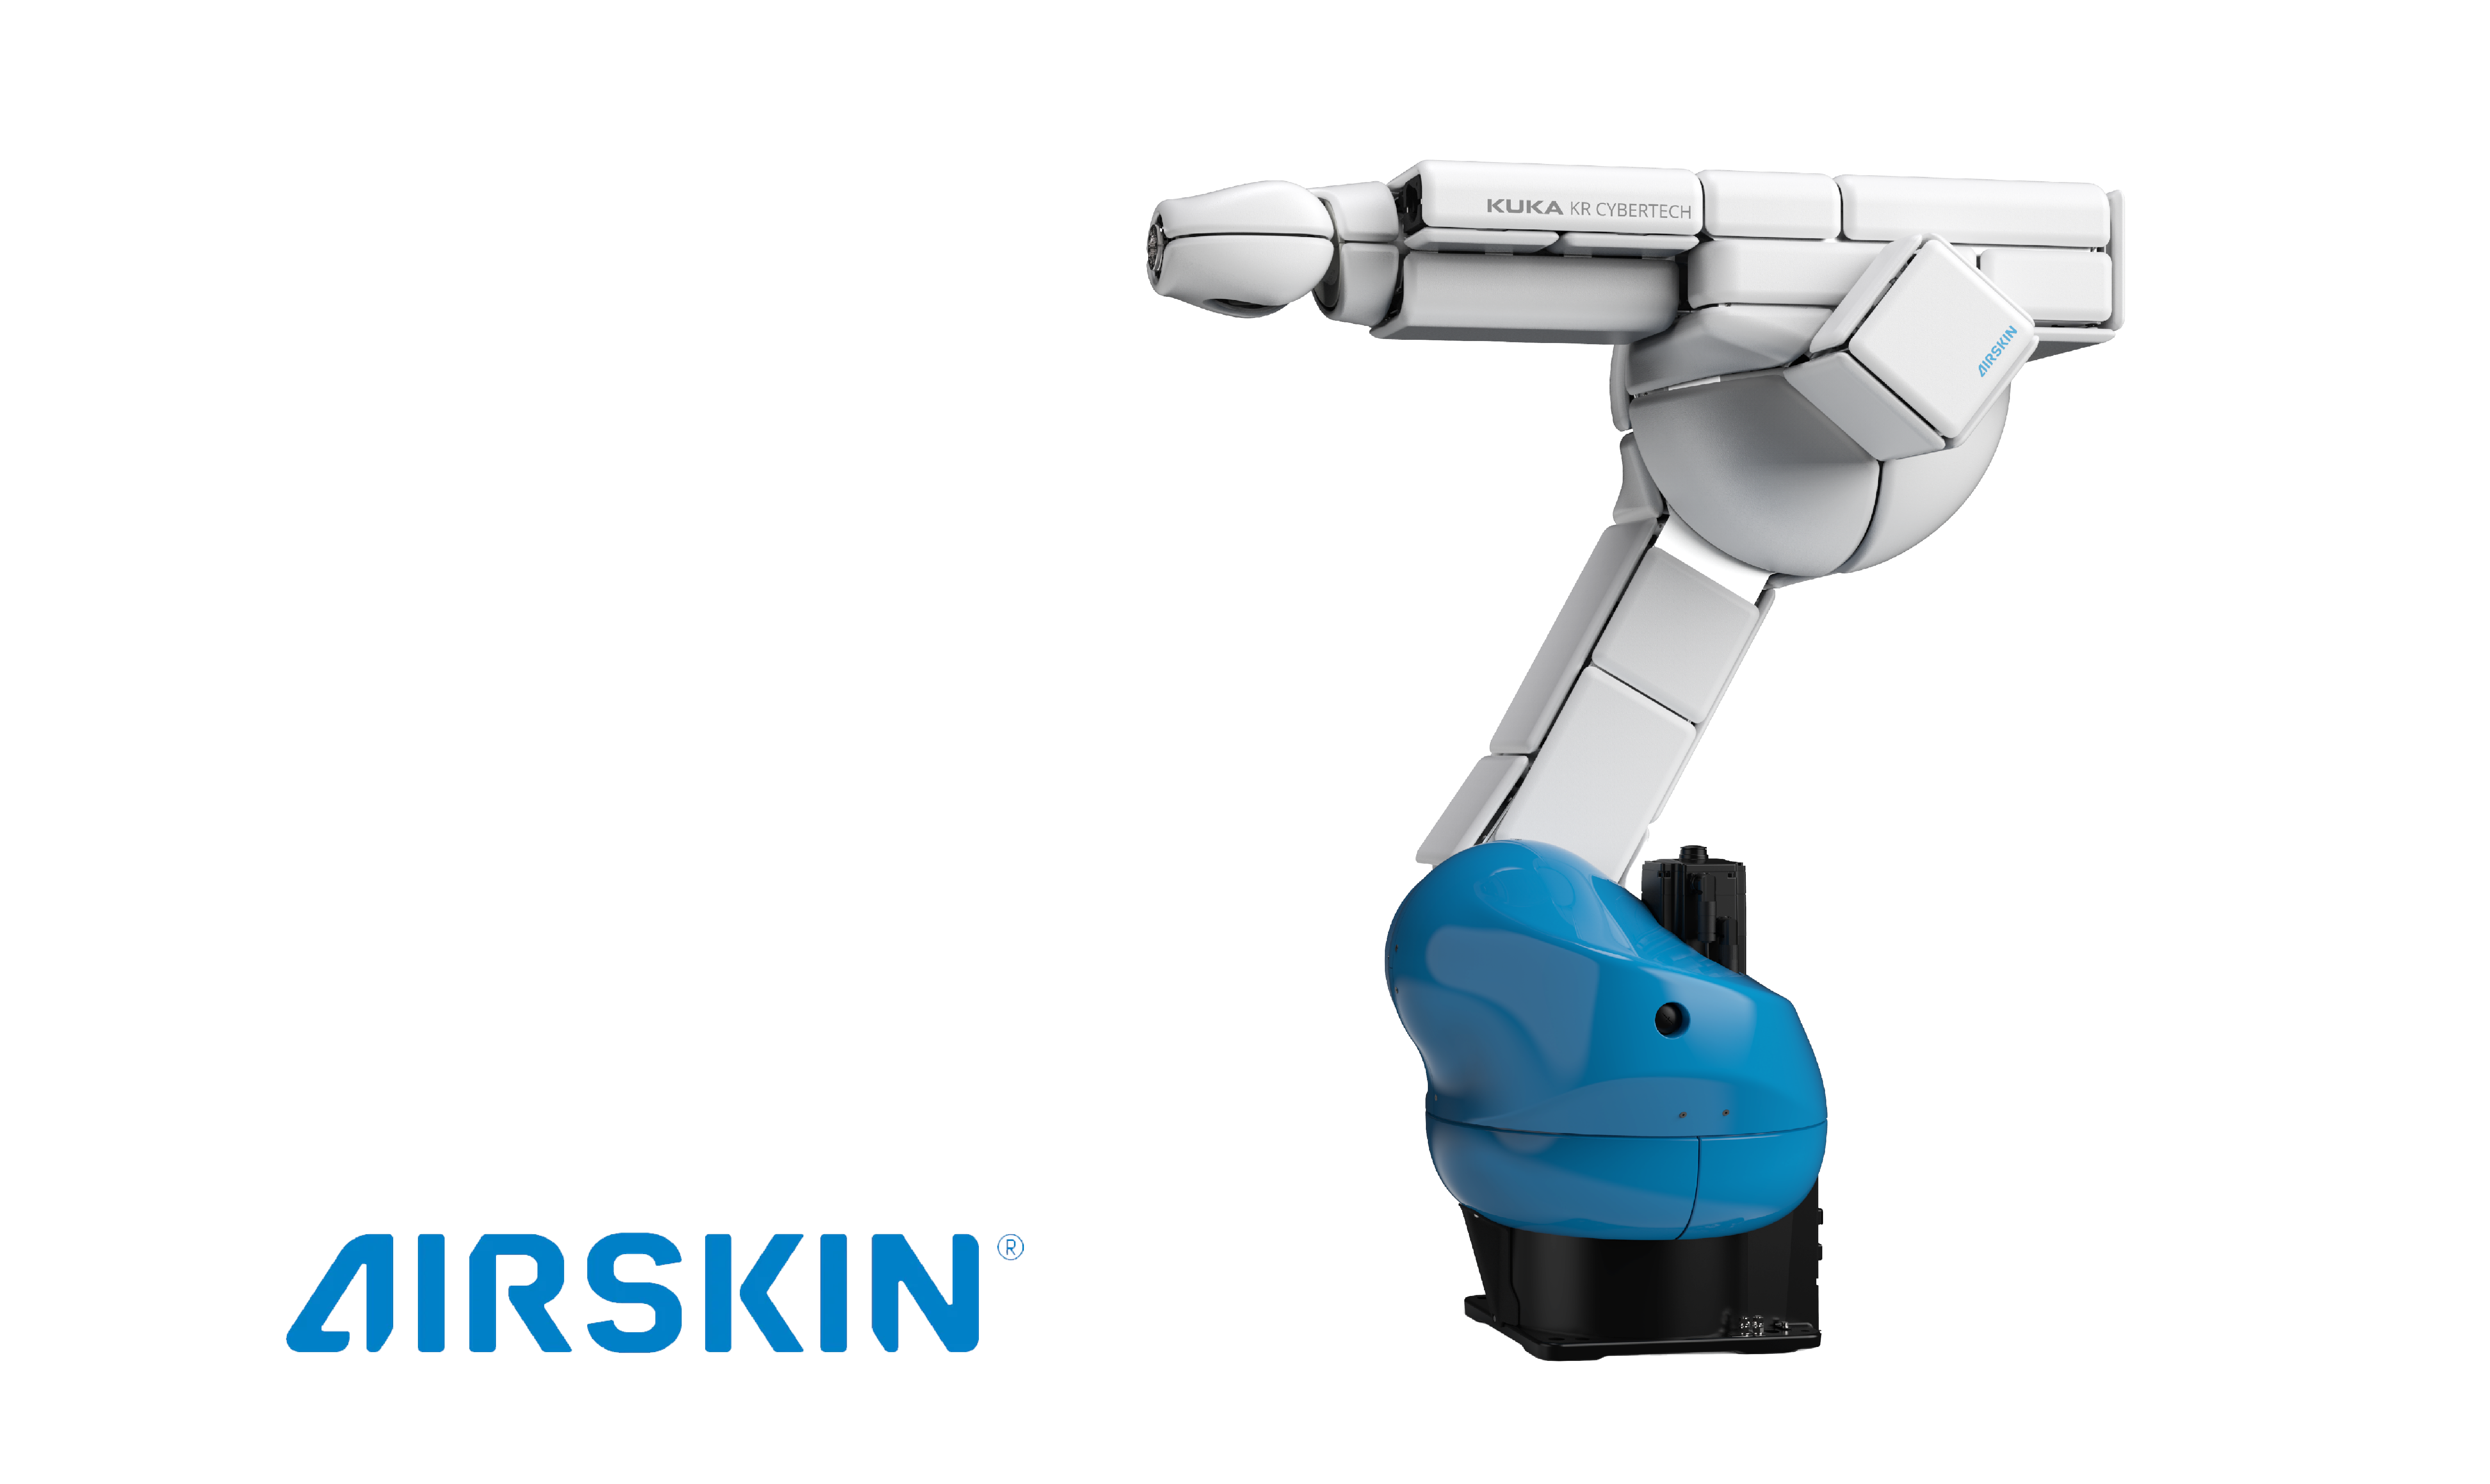 Auf dem Bild ist ein Industrieroboterarm der Marke KUKA in Weiß und Blau zu sehen, mit der Aufschrift "AIRSKIN" auf dem Hintergrund, was auf eine spezielle Sensorhaut für Sicherheit bei der Zusammenarbeit mit Menschen hinweisen könnte.